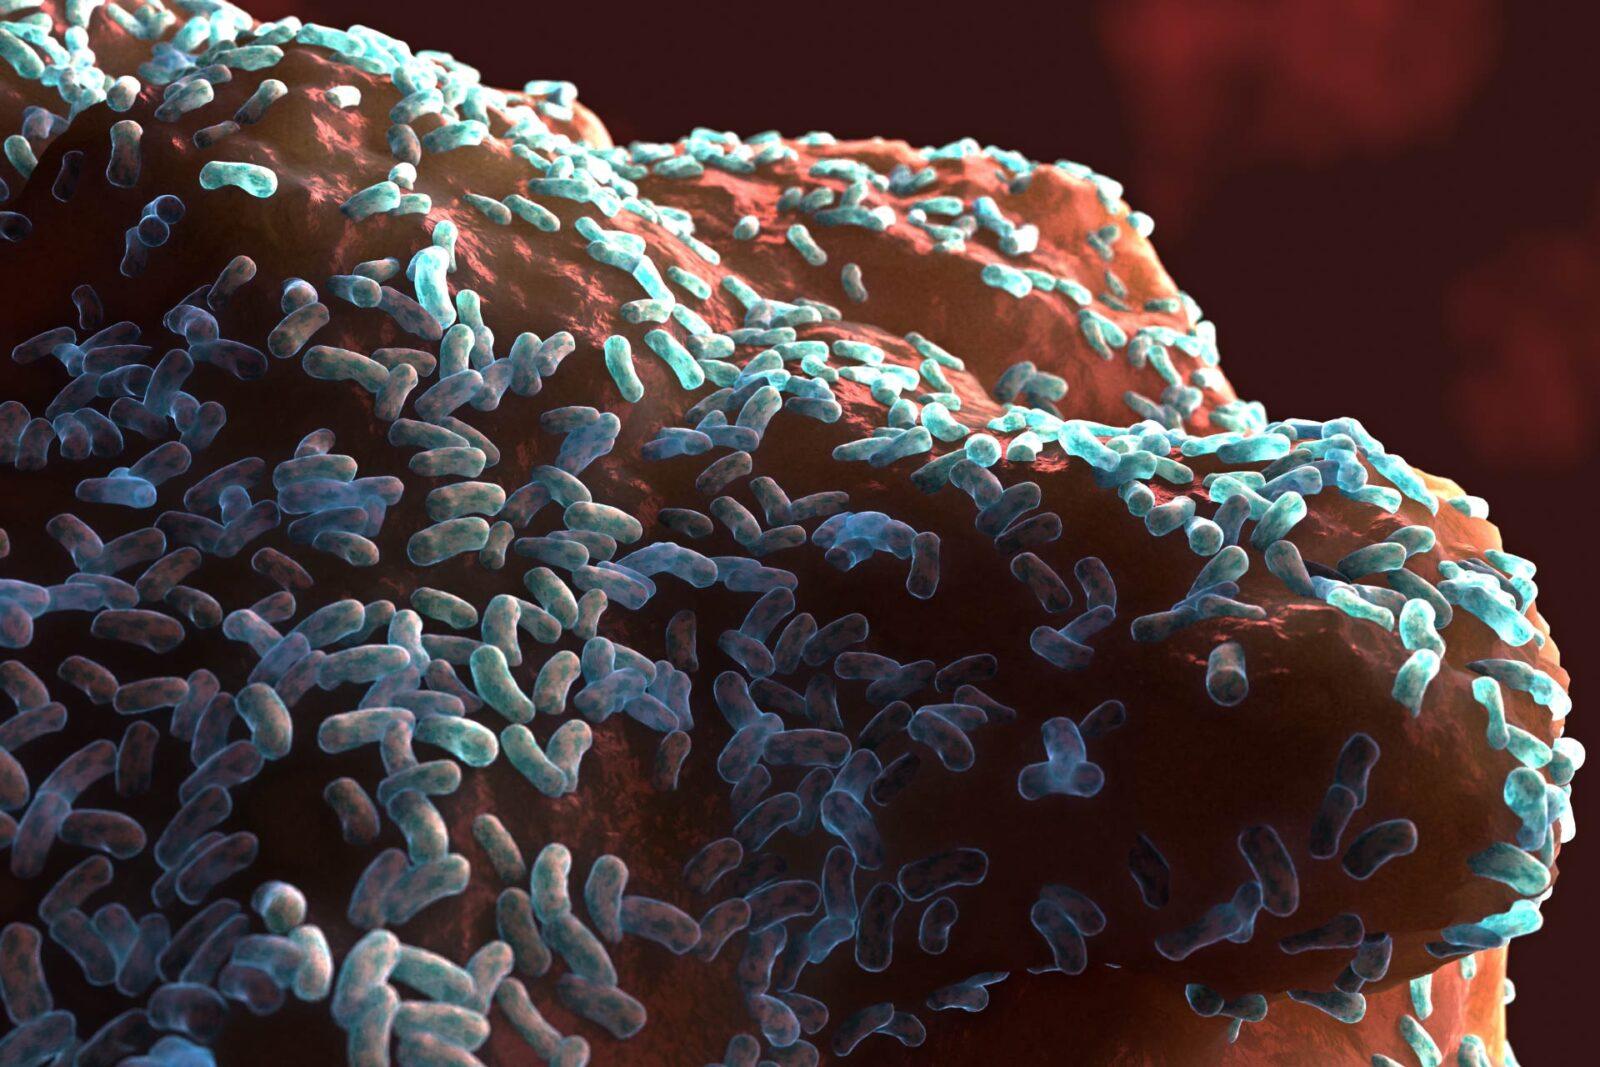 رسمة ثلالثية الأبعاد تظهر فيها مجموعة من الخلايا البكتيرية العصوية في البيوفيلم